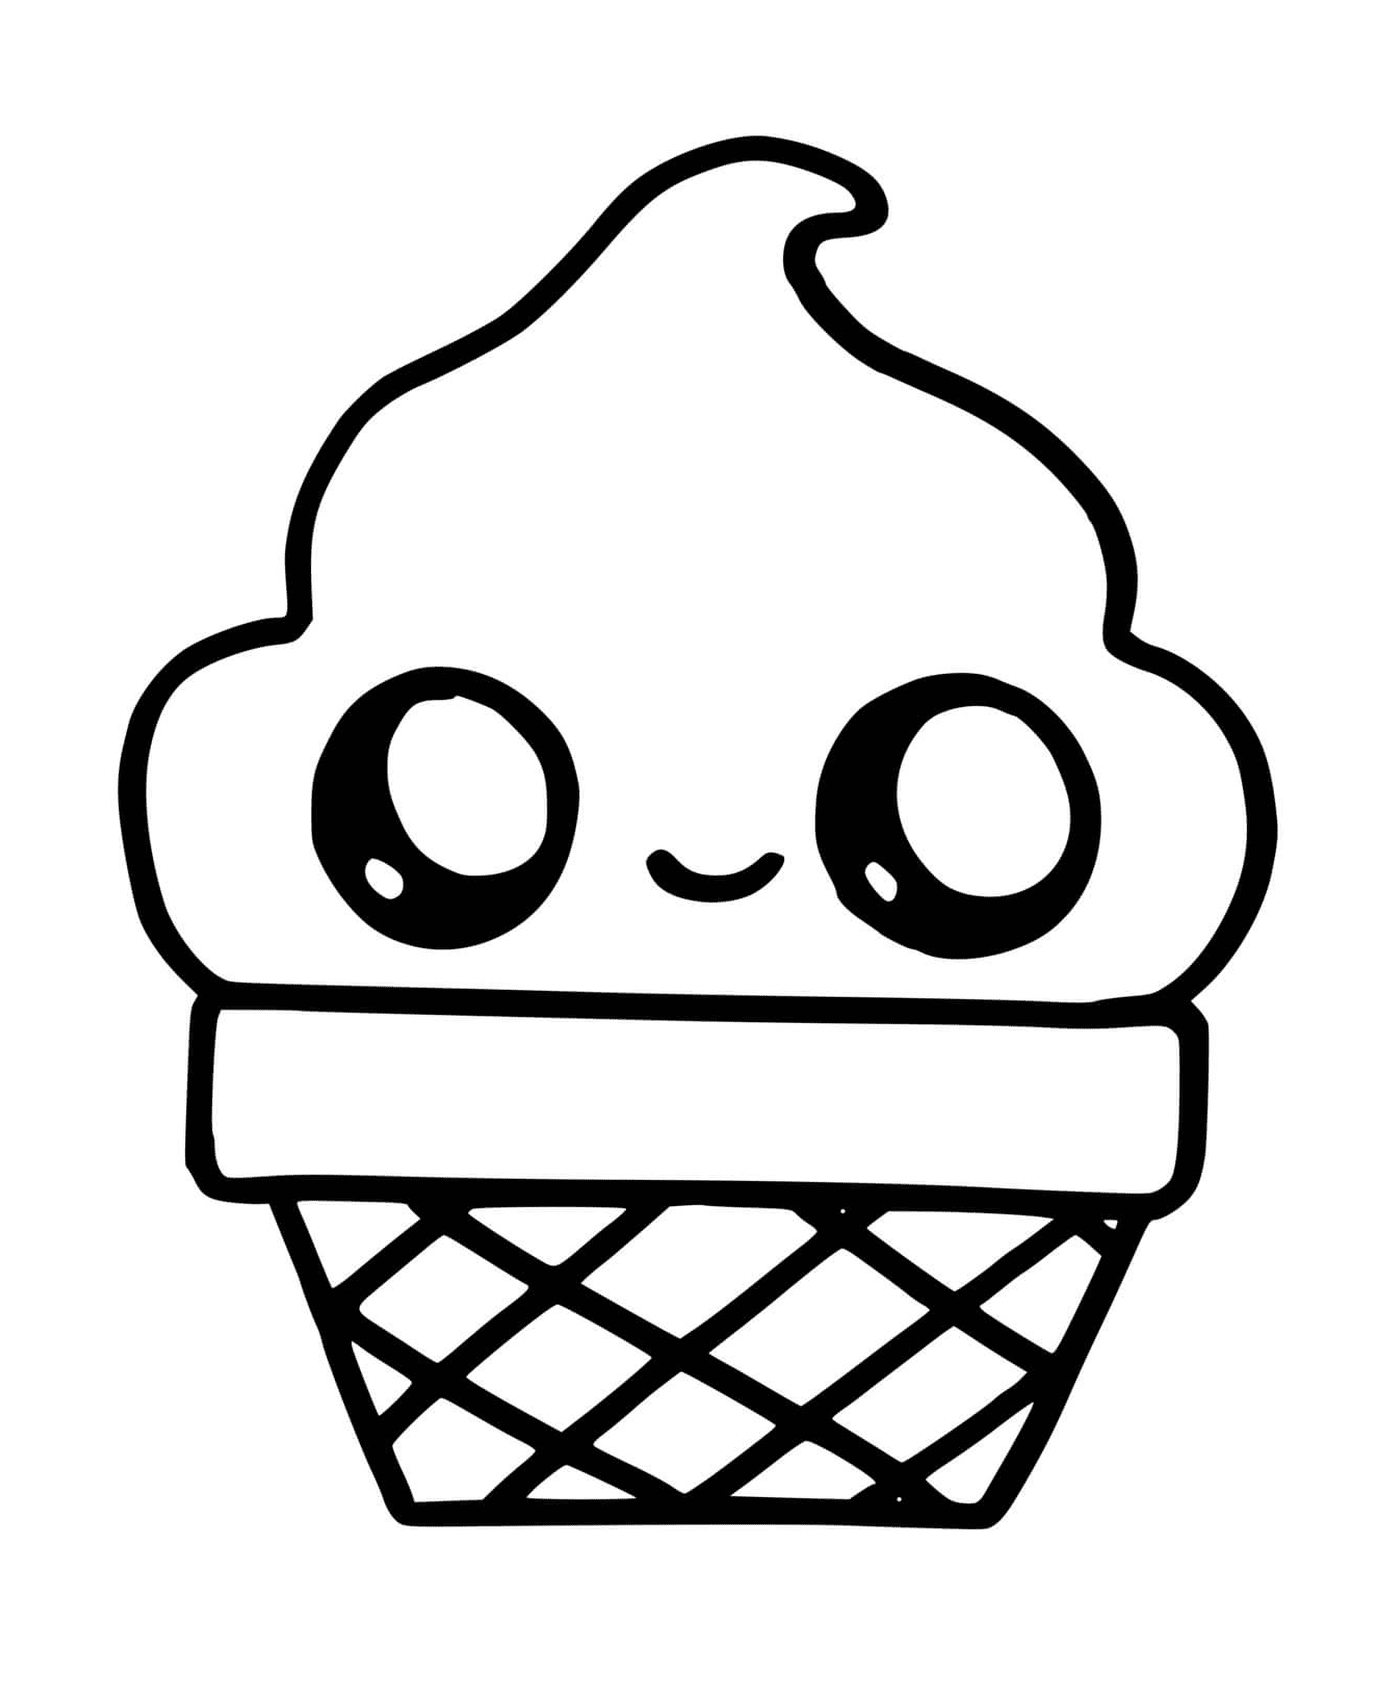  Um cone de gelo com um rosto sorridente desenhado sobre ele 